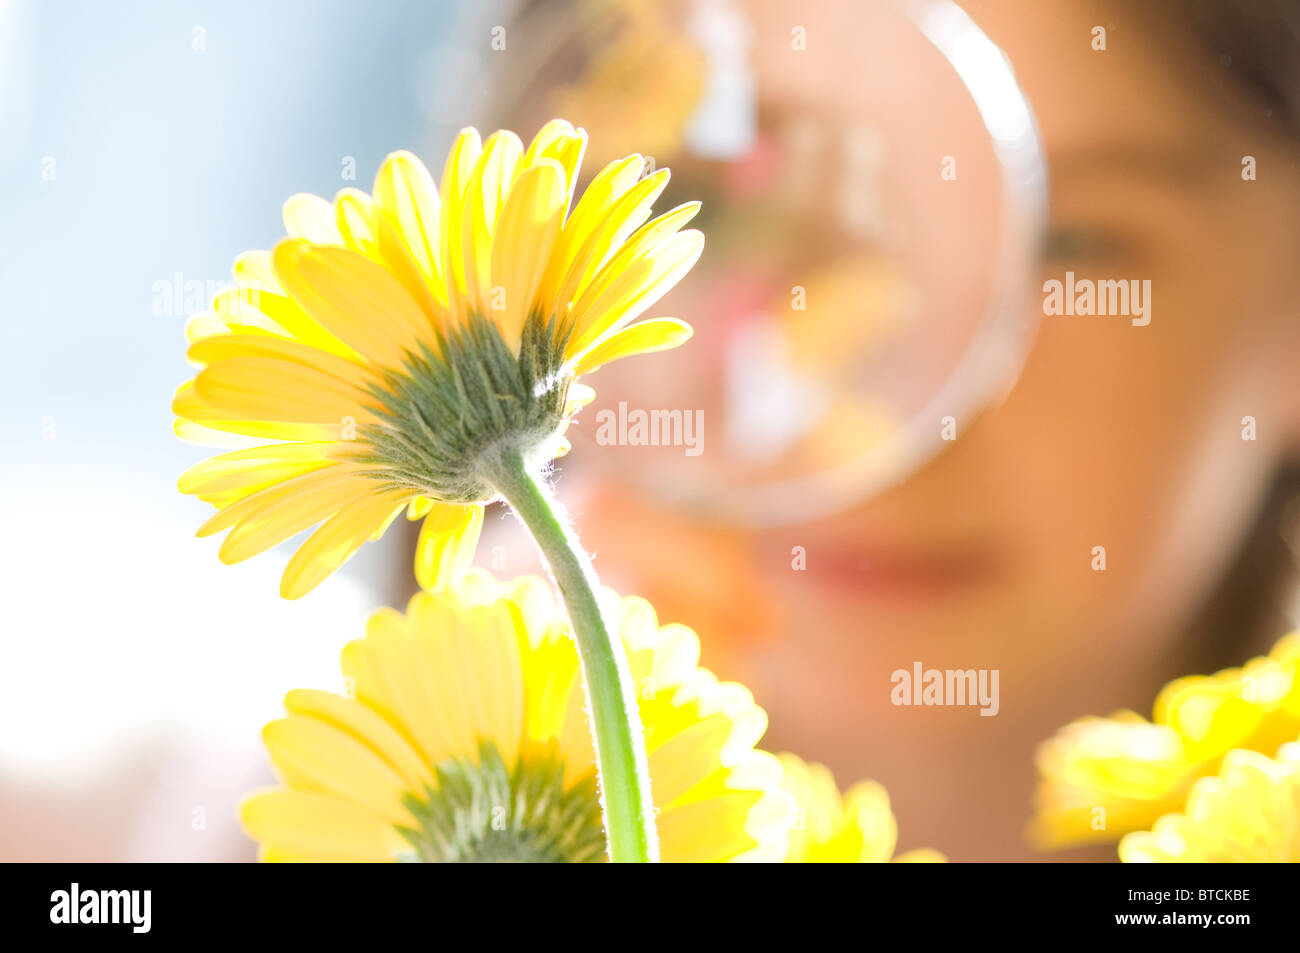 Junge, weibliche Blüte durch Lupe betrachten Stockfoto